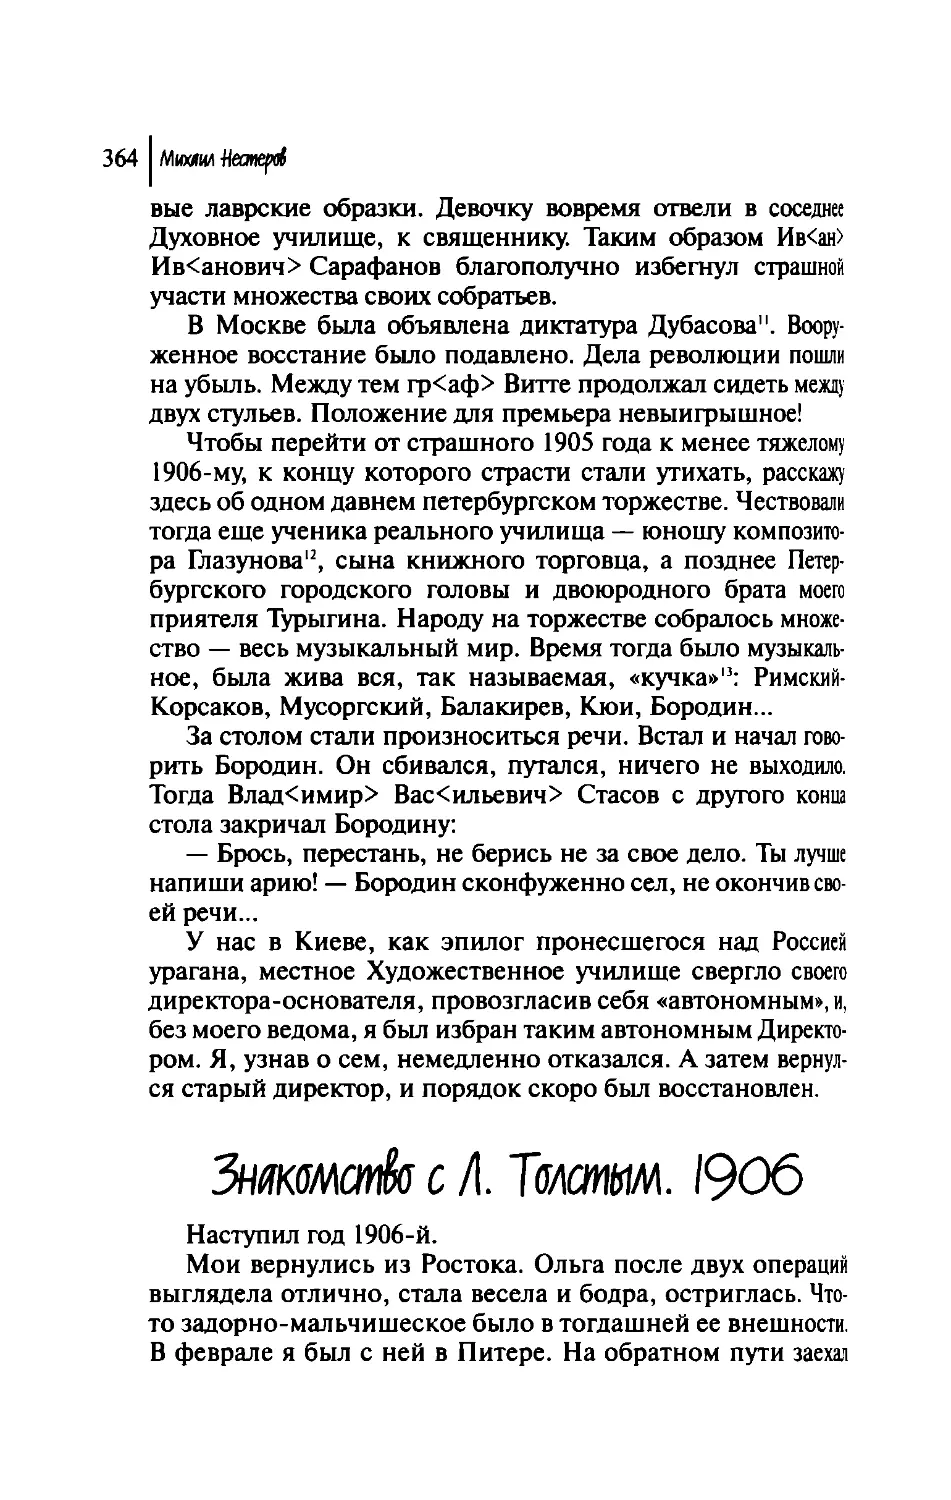 Знакомство с Л. Толстым. 1906